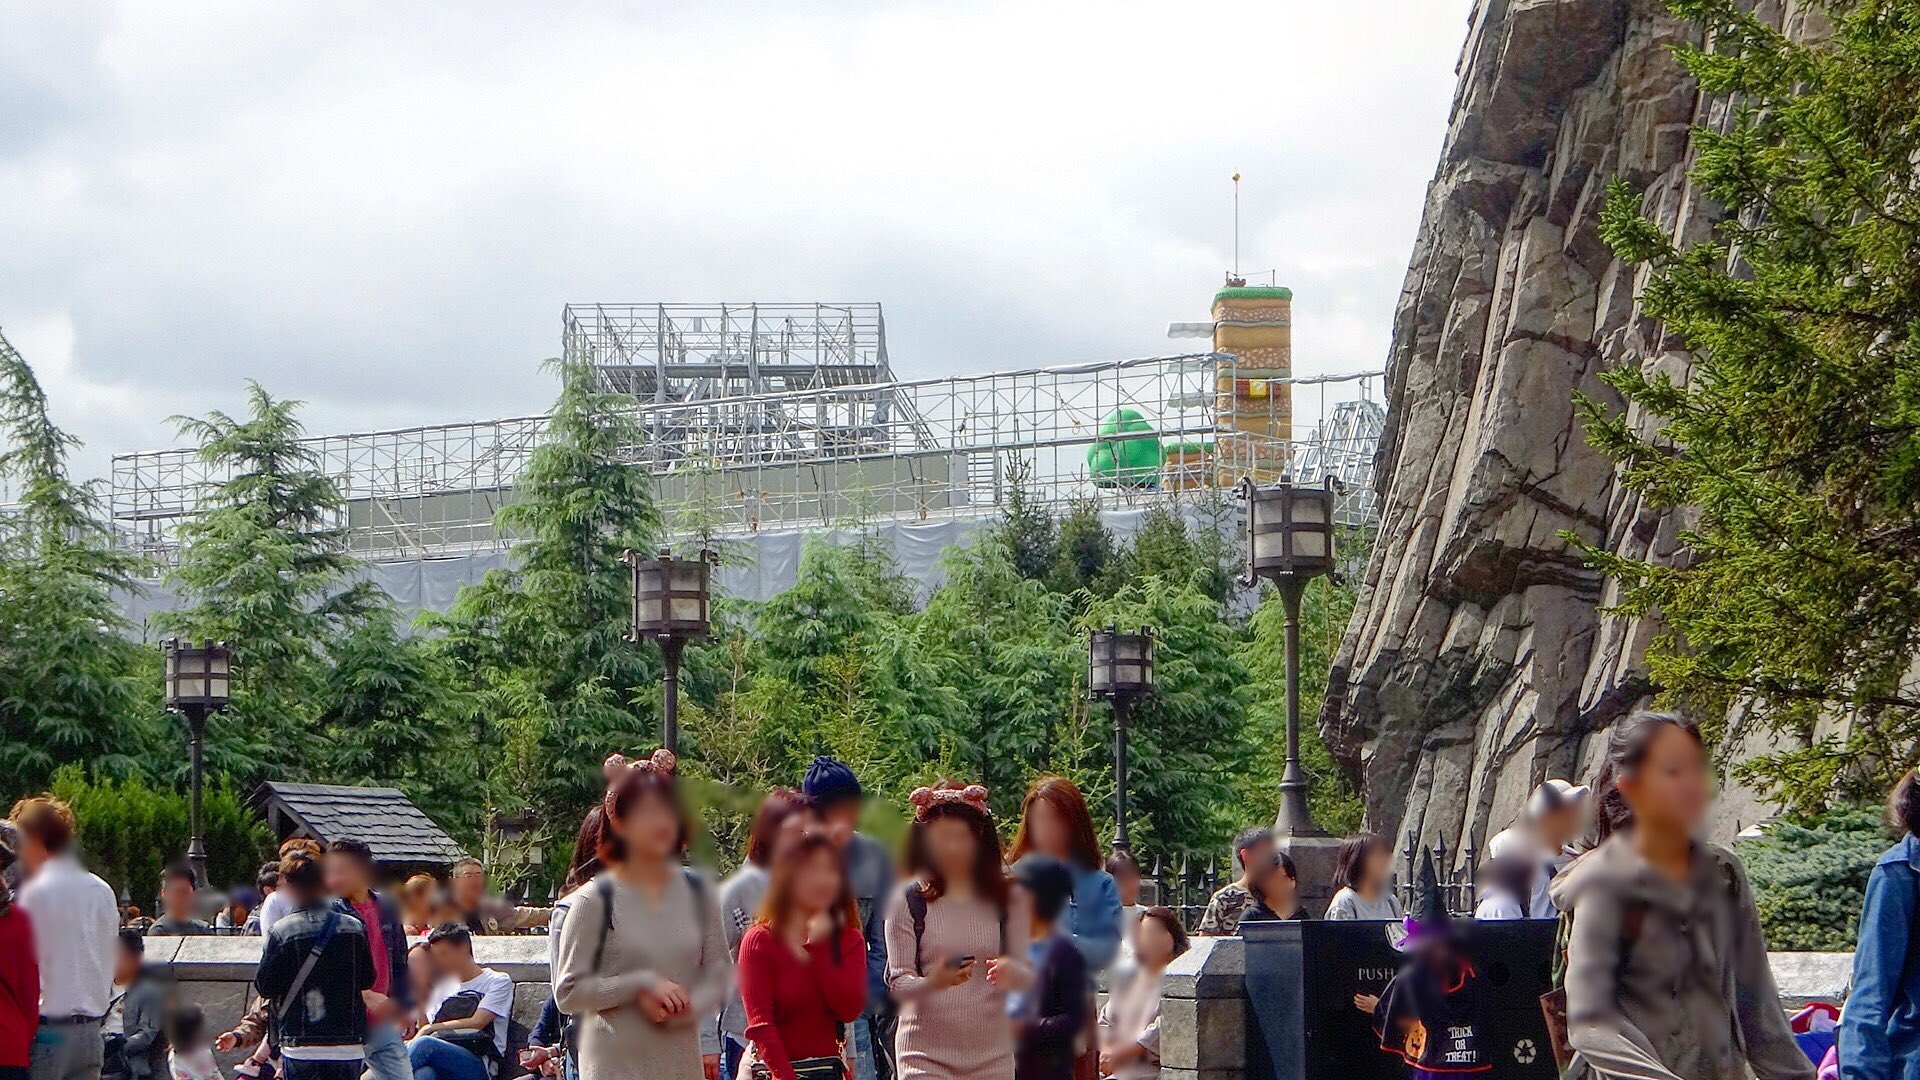 任天堂主题公园施工图曝光 2020年东京奥运会前建成开放